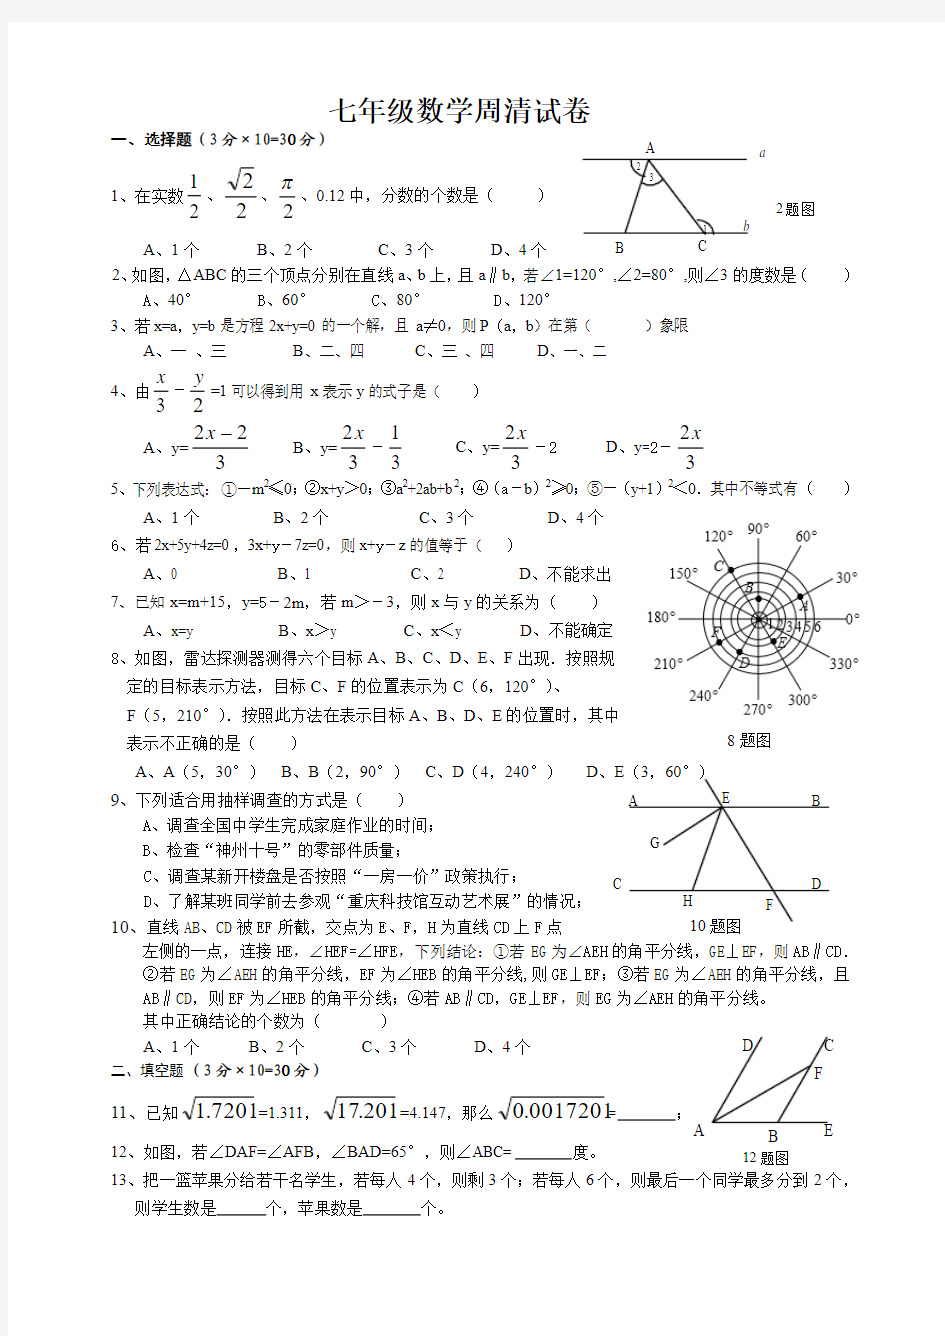 七年级数学周清试卷-2013.6.26